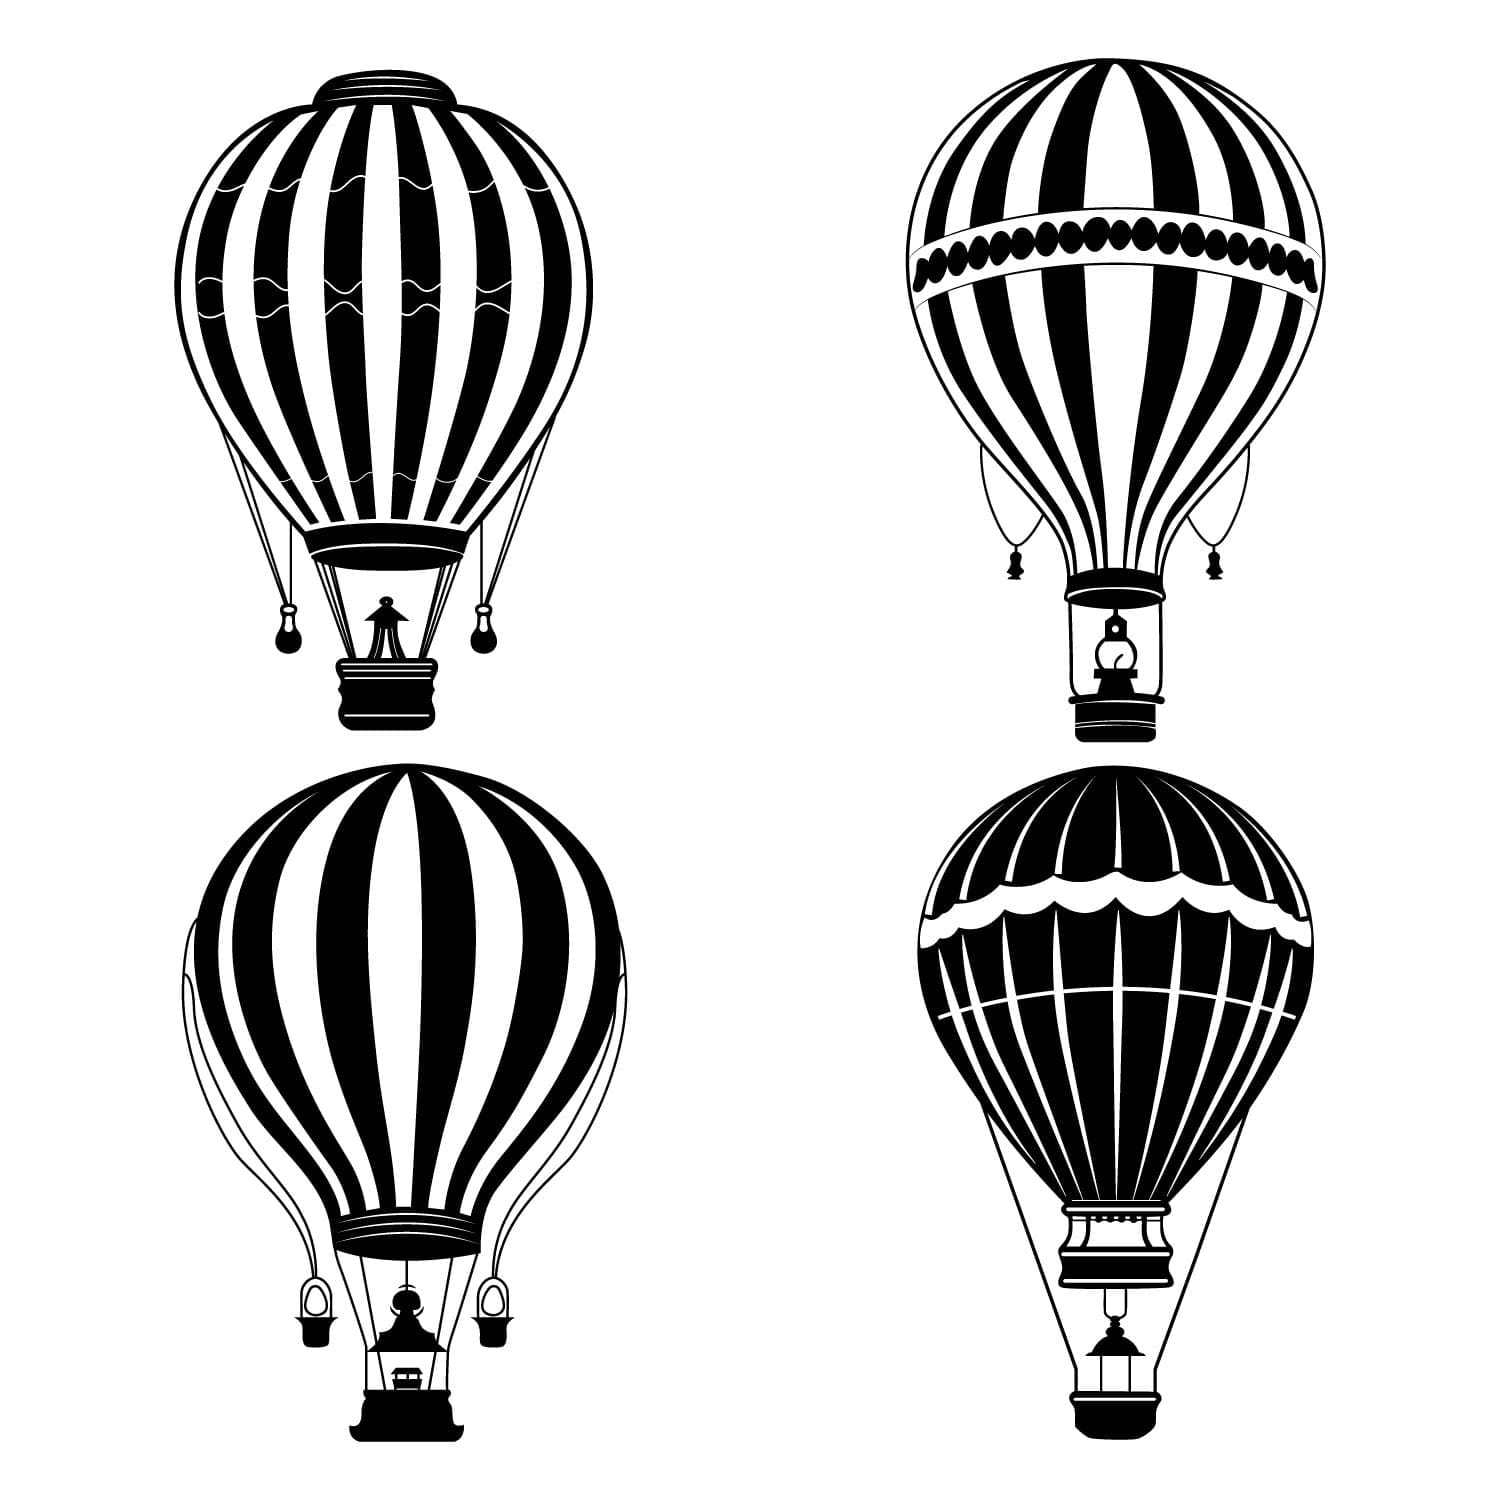 Hot Air Balloon Silhouette - Vector Art